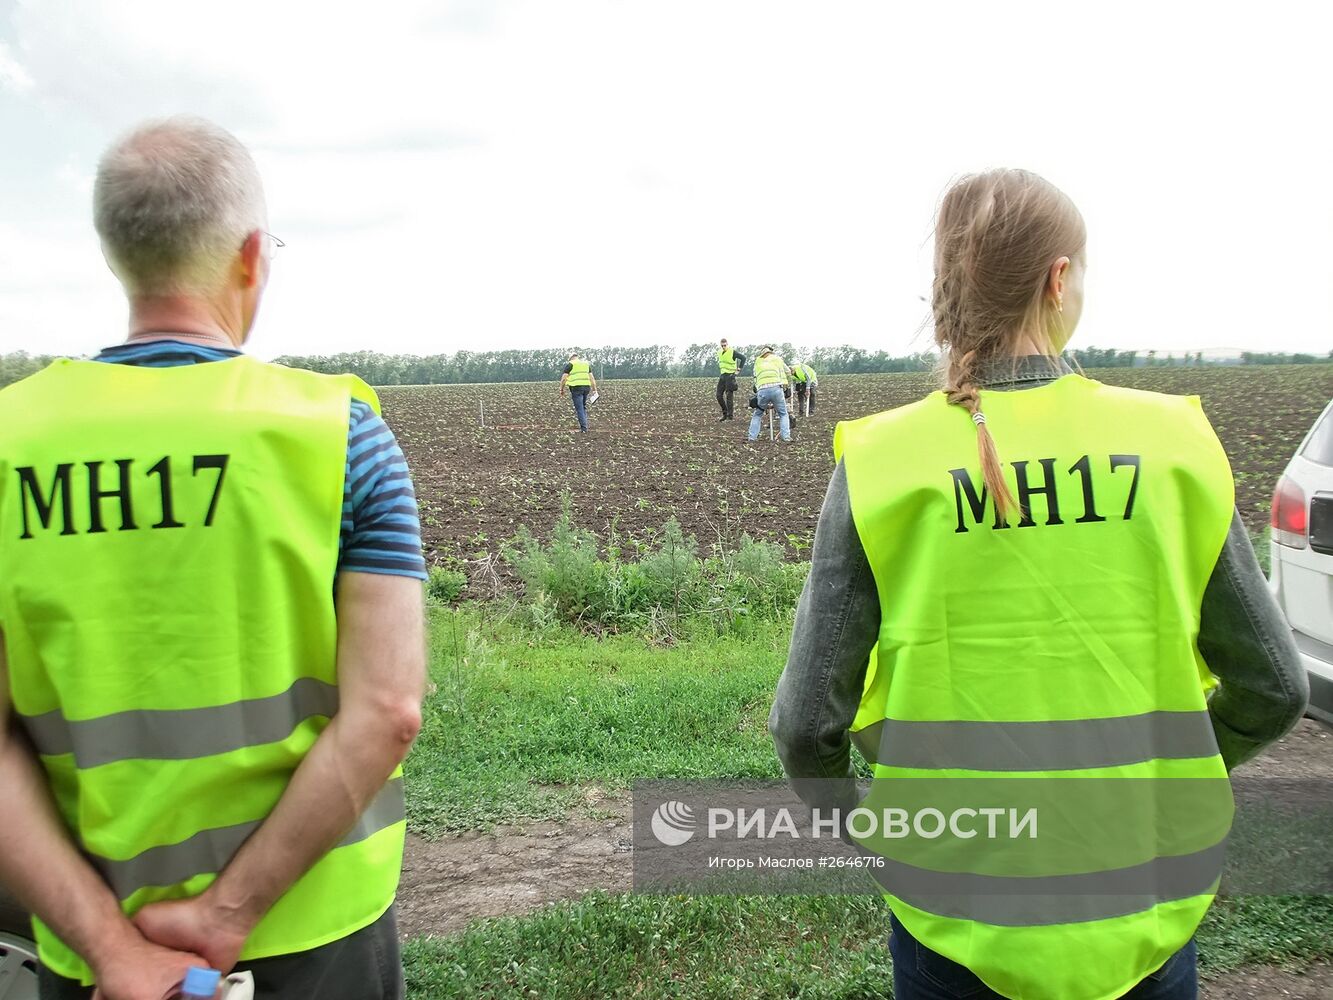 Международные эксперты прибыли в Донецк для расследования причин крушения малайзийского Boeing 777